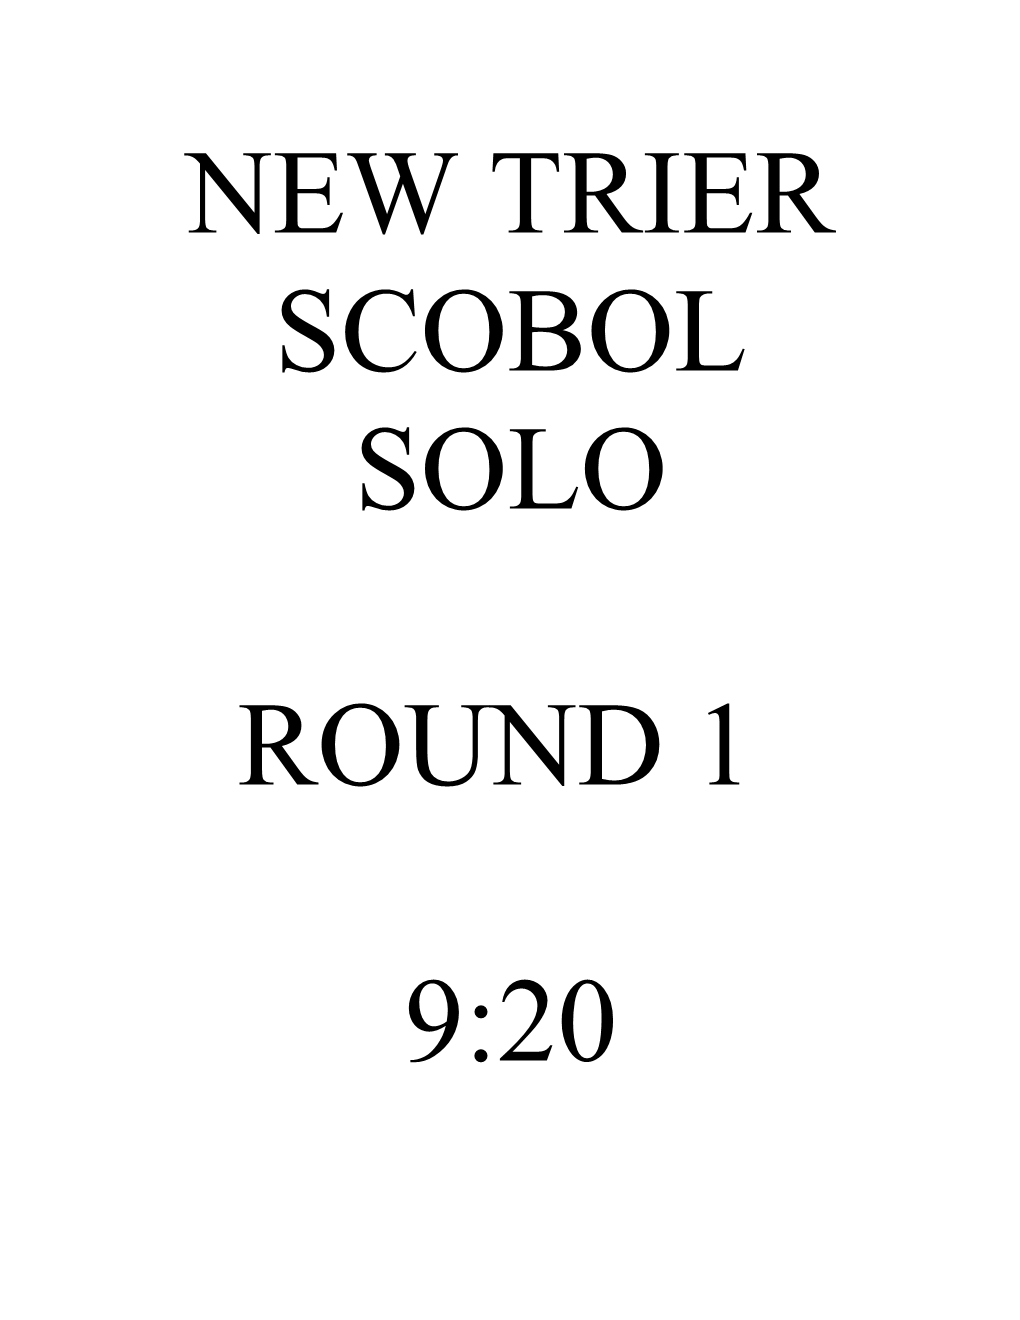 New Trier Scobol Solo